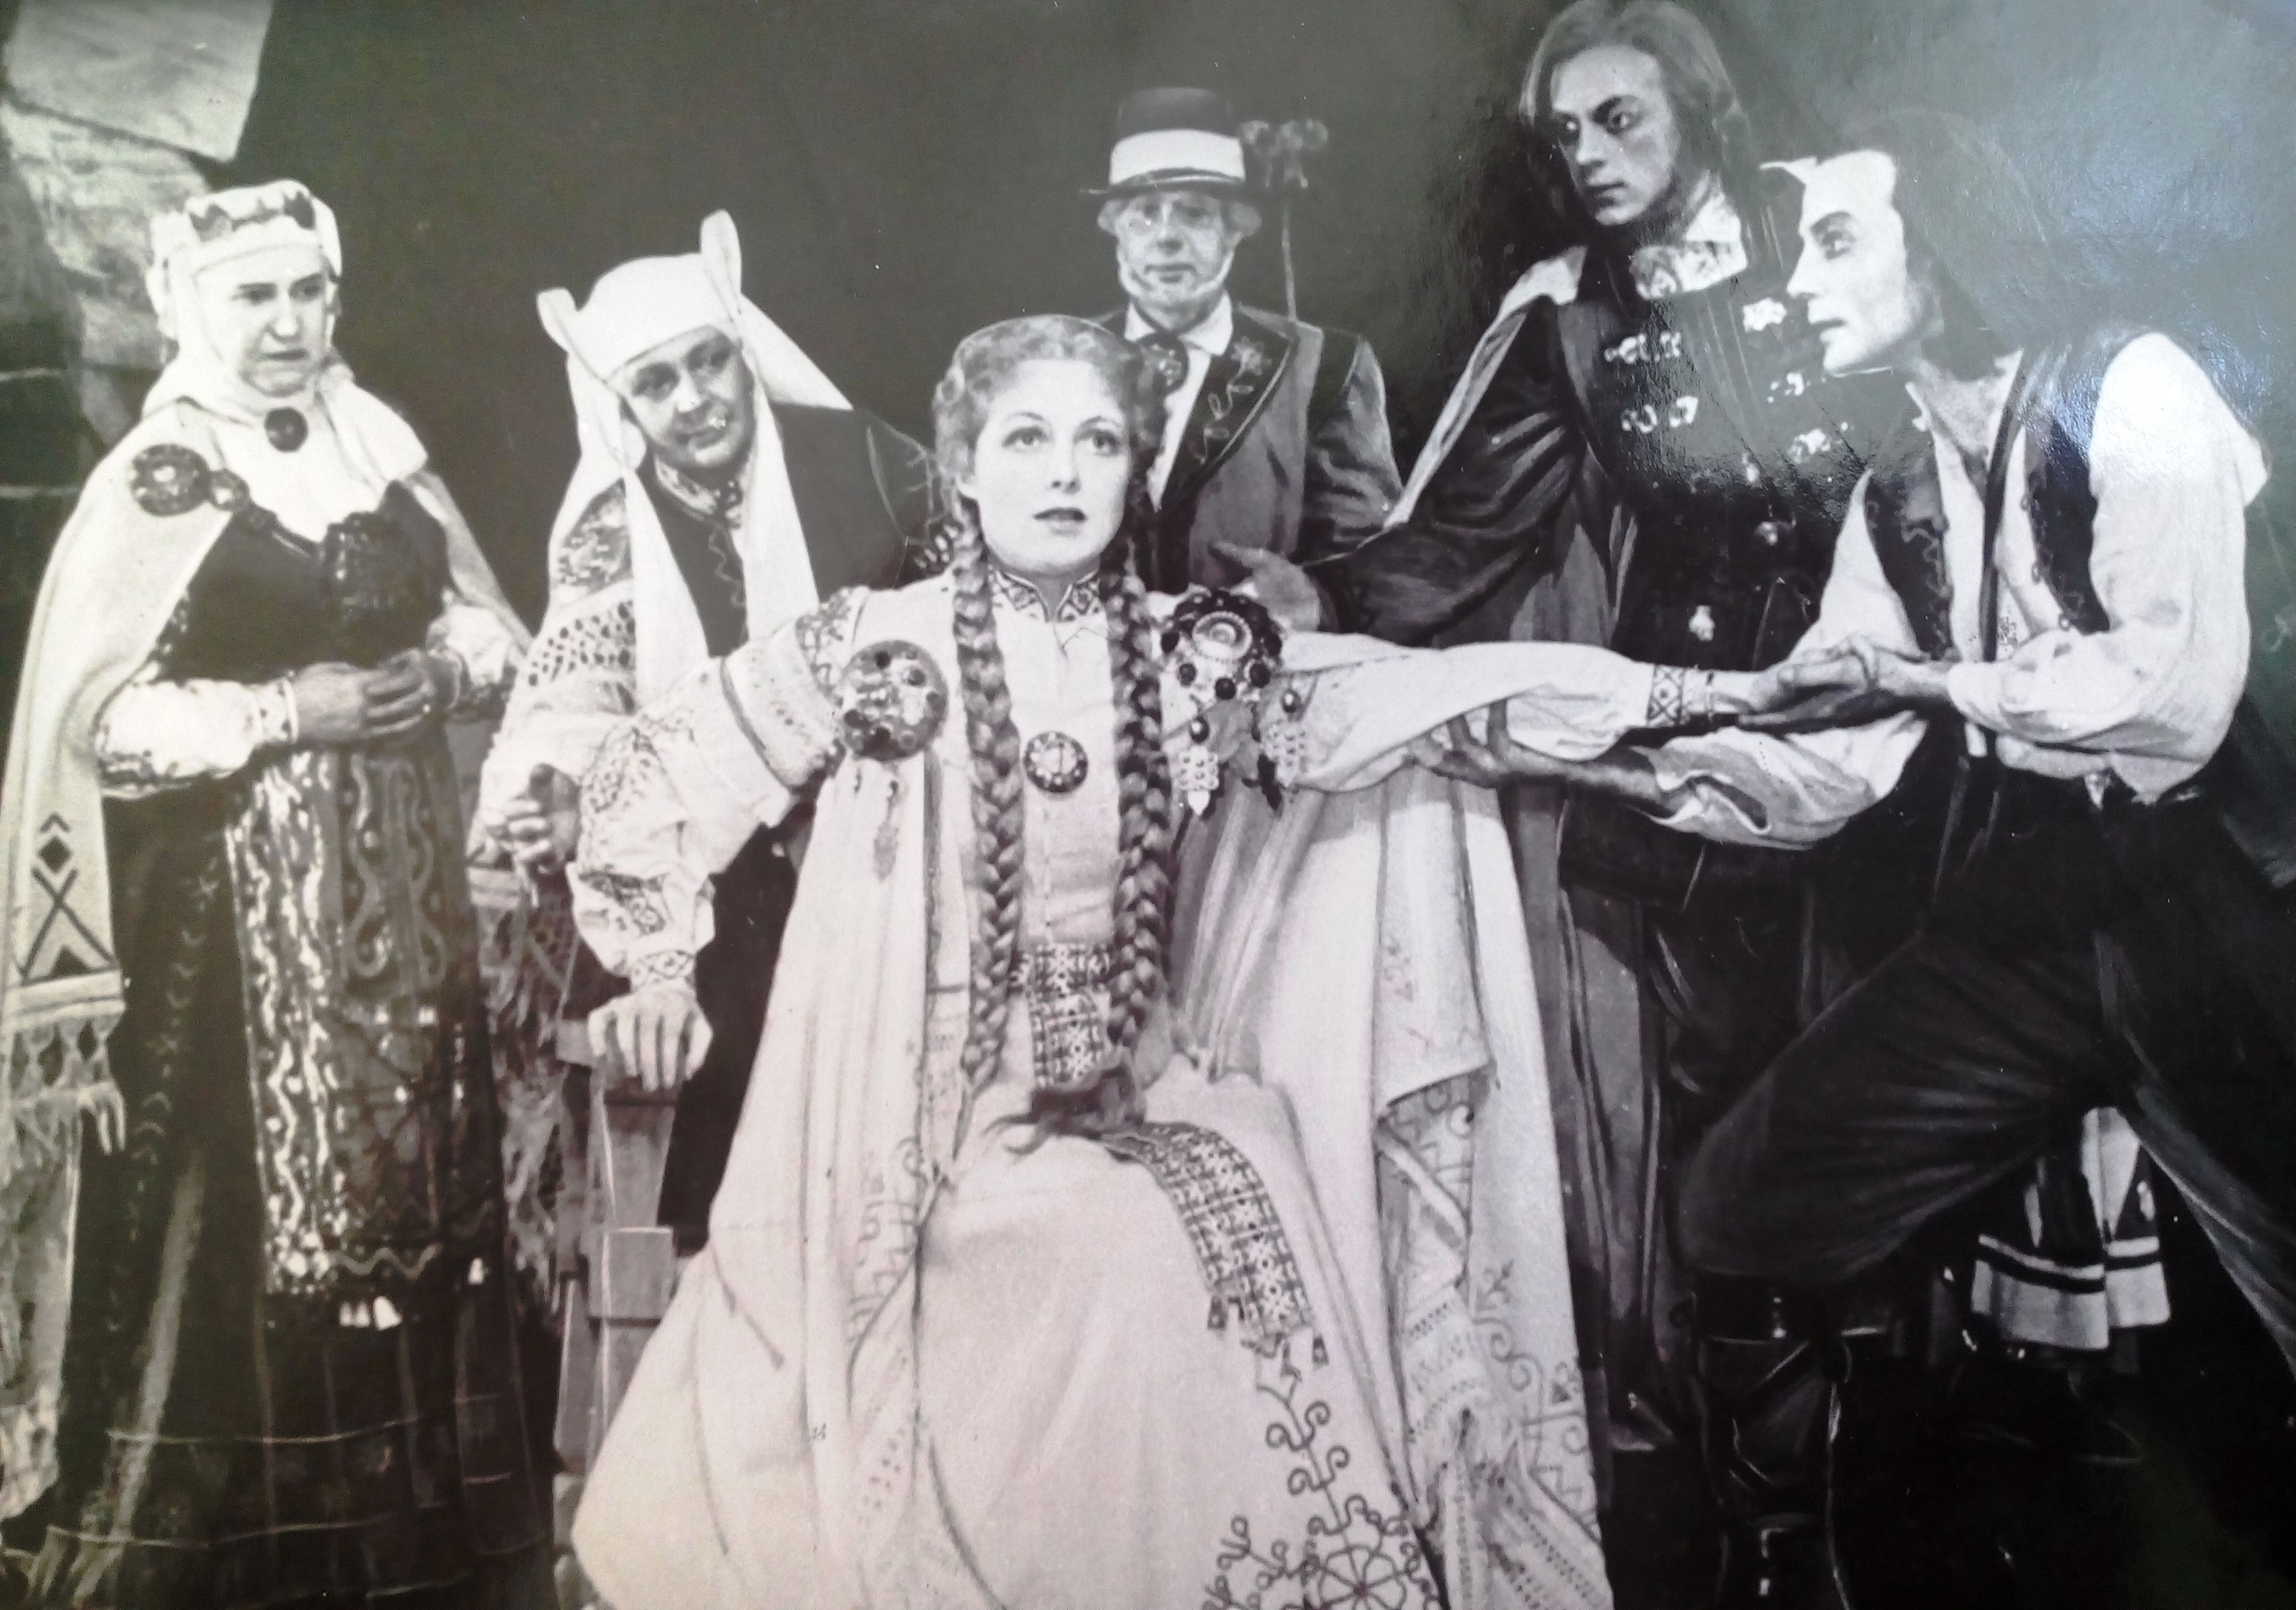 Raiņa lugas „Spēlēju, dancoju” uzvedums Raiņa Dailes teātrī 1956. gadā. Pēdējais skats ar Leldi centrā. Lelde – Vija Artmane, Tots – Harijs Liepiņš. RMM 110.685